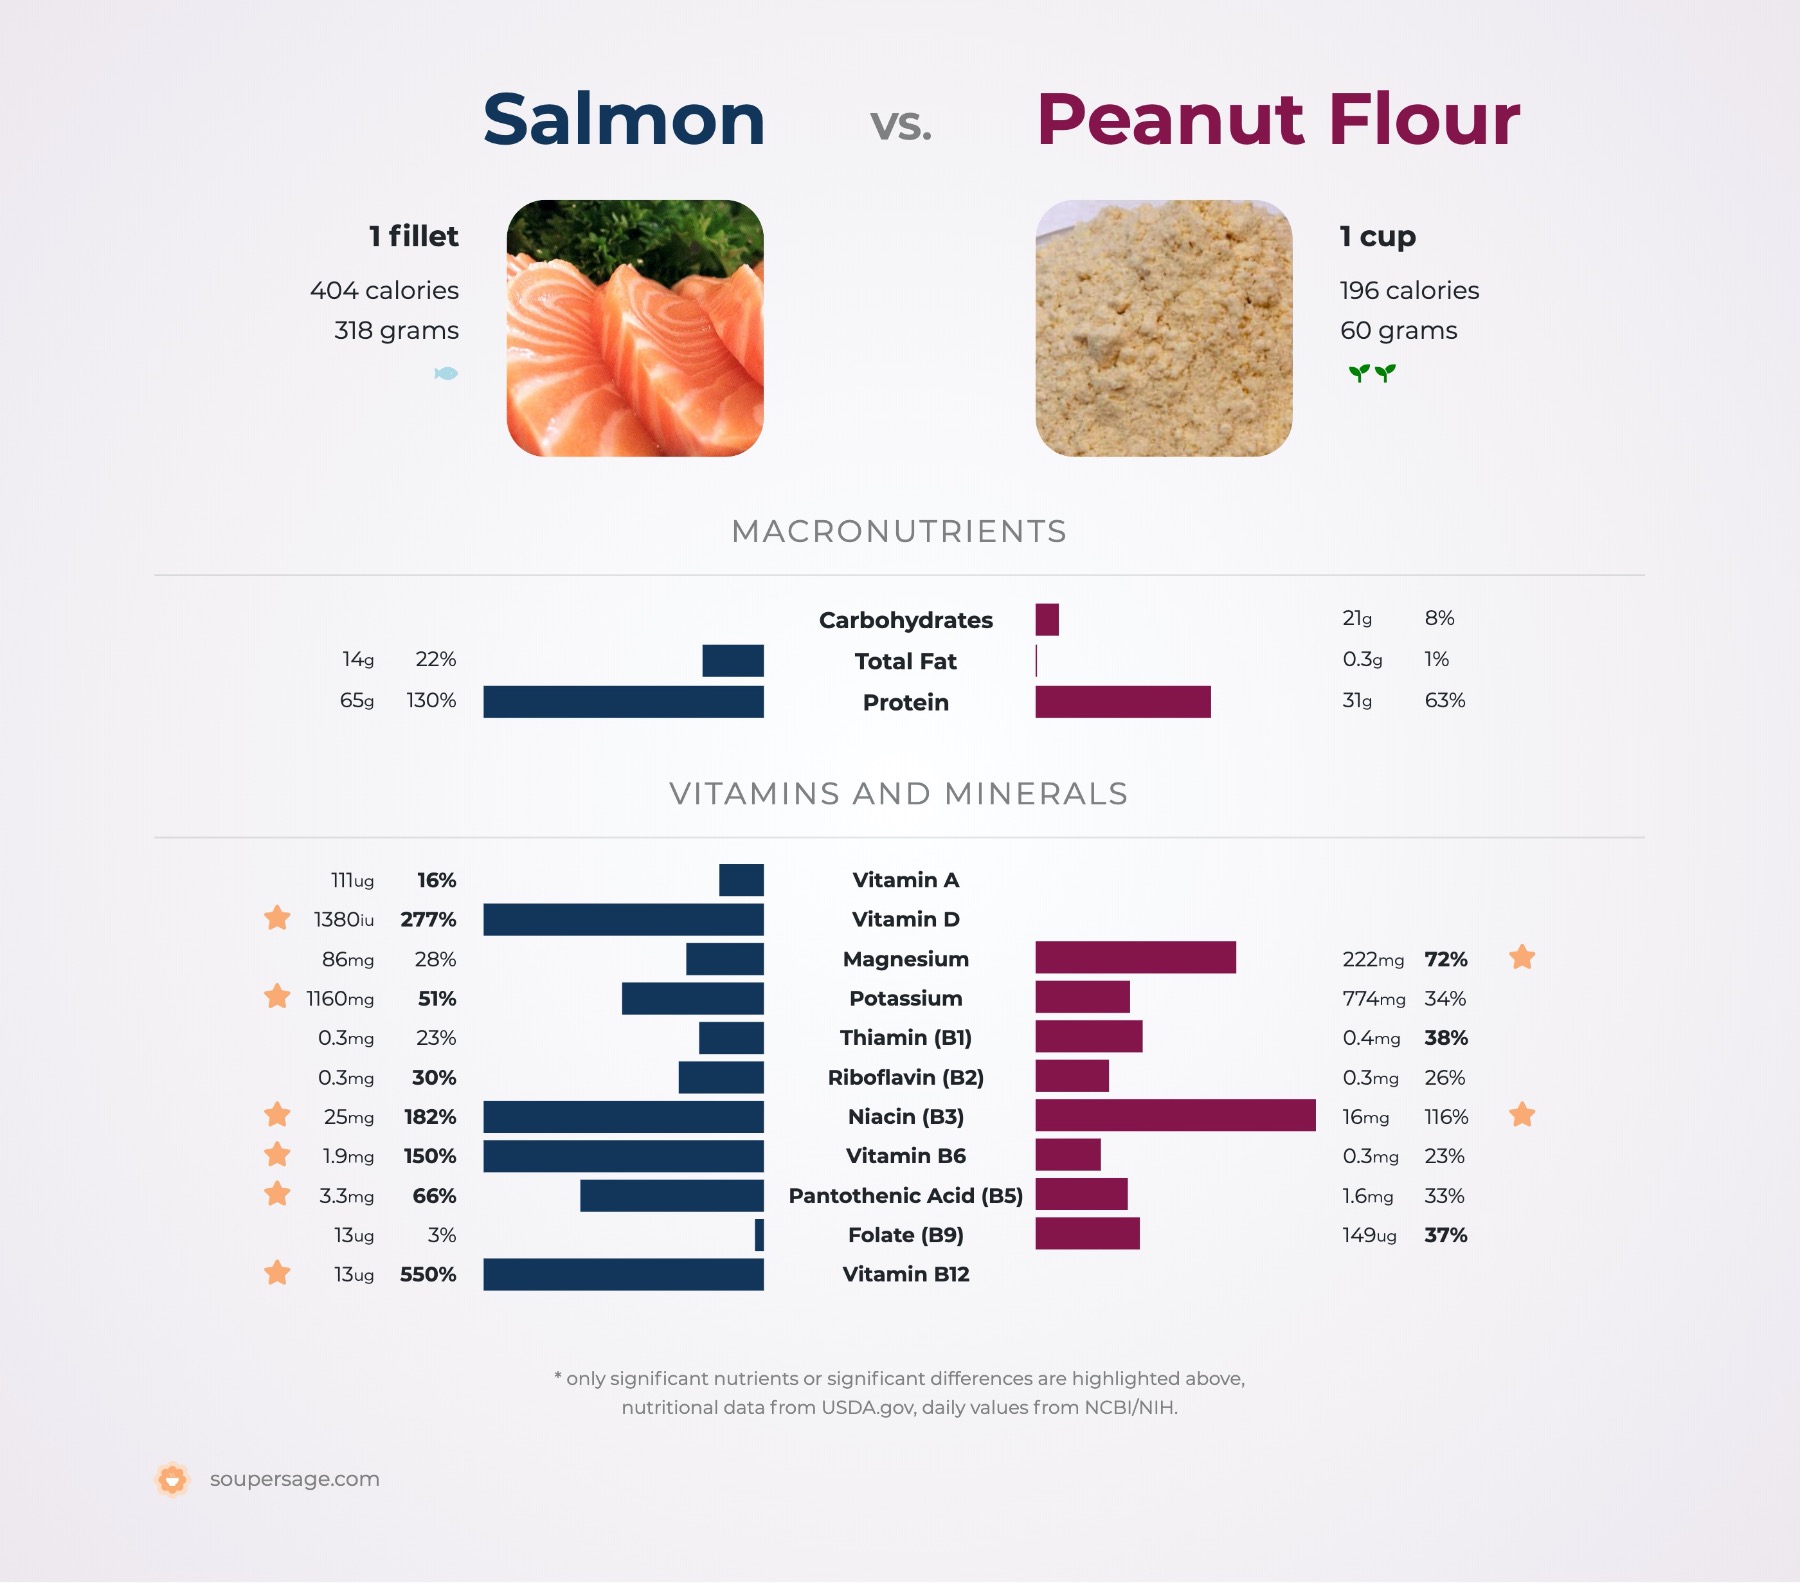 nutrition comparison of salmon vs. peanut flour